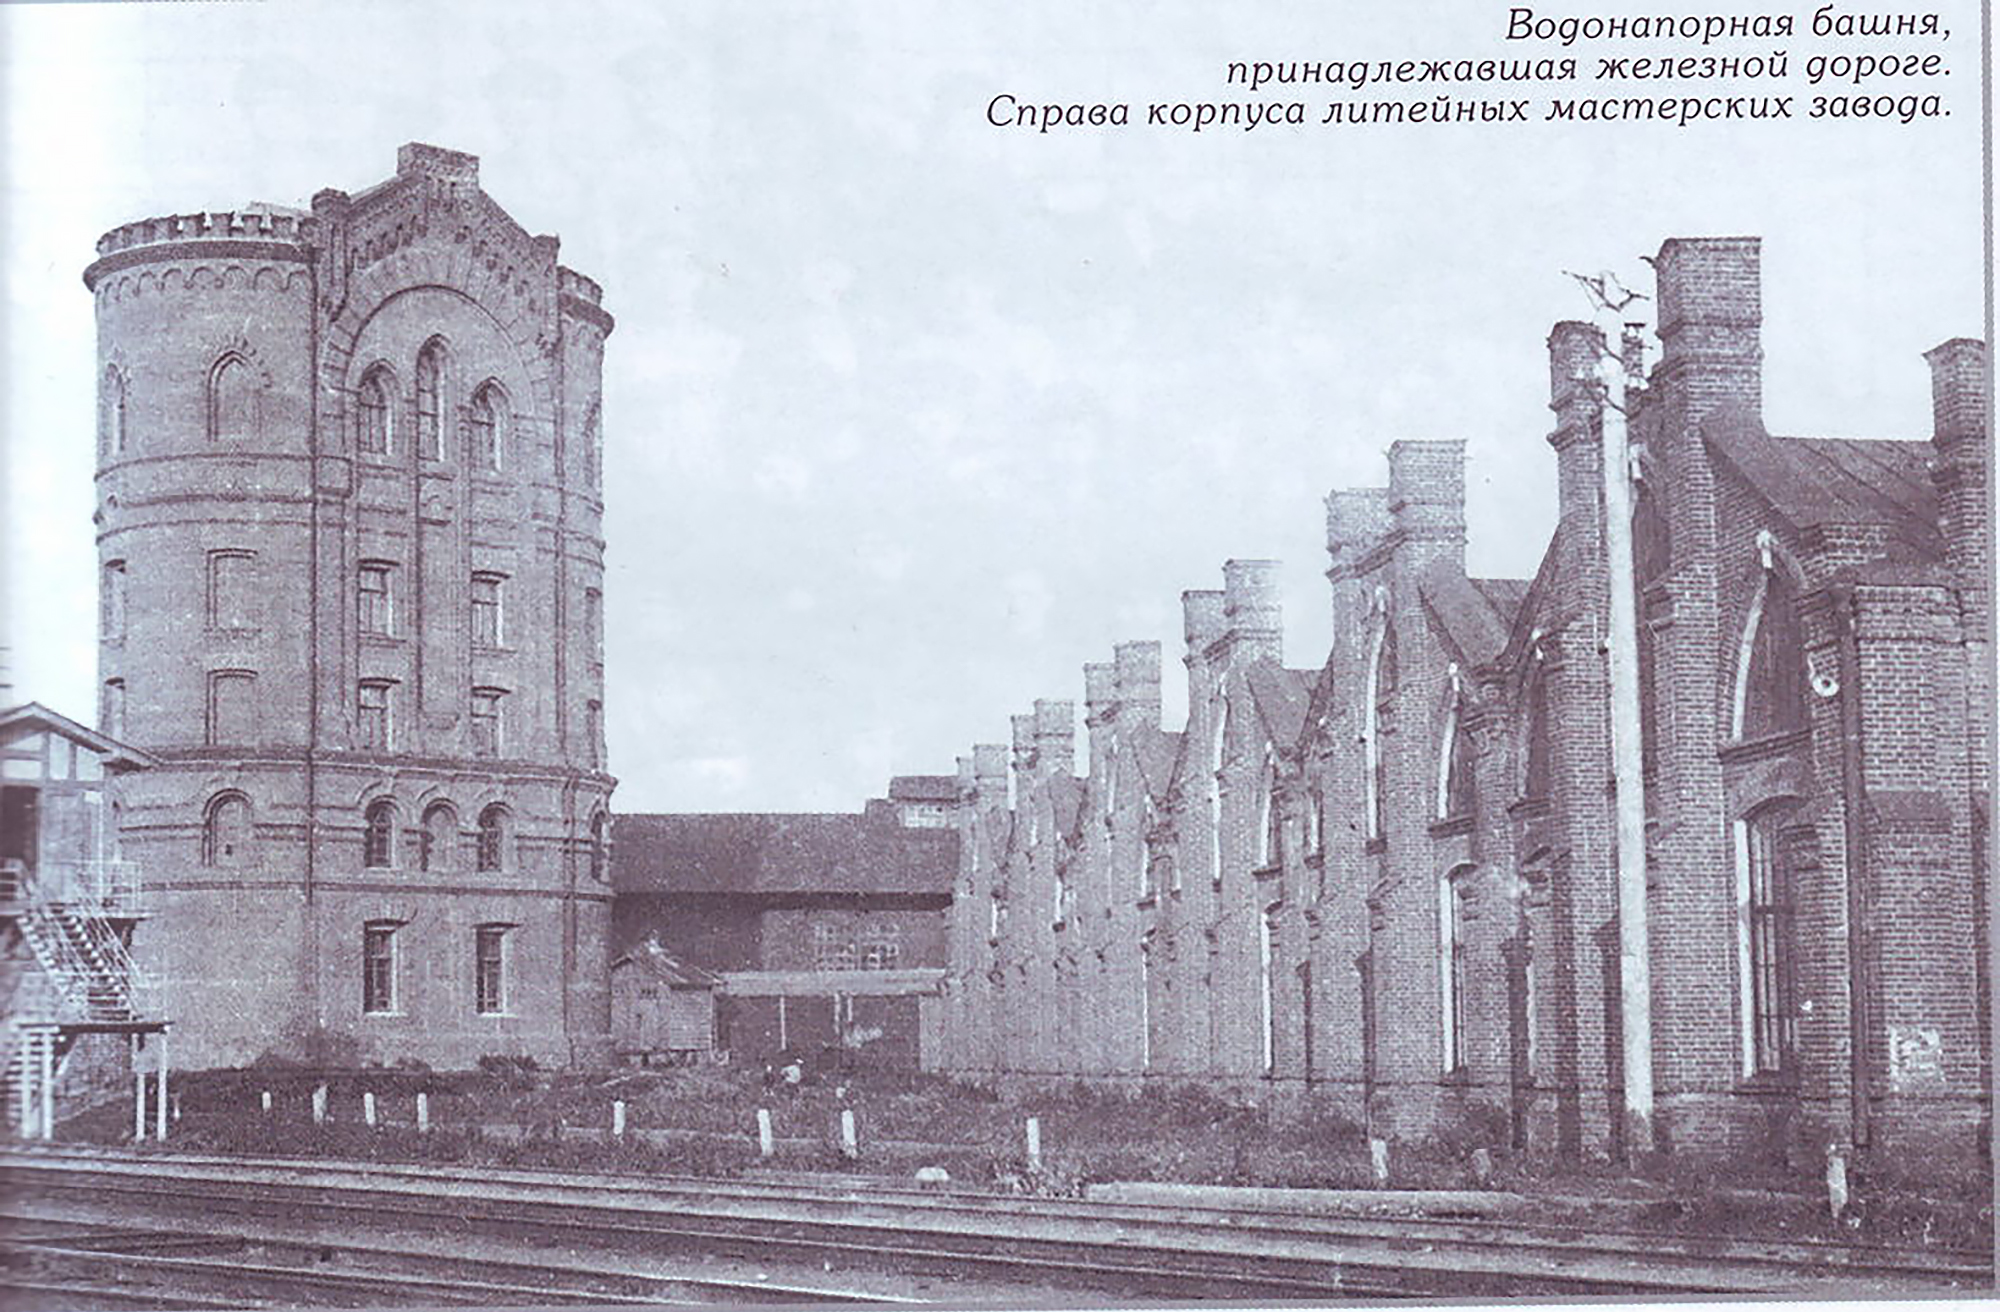 Корпус литейных мастерских завода в Мытищах (справа) рядом с водонапорной башней железной дороги, начало XX века